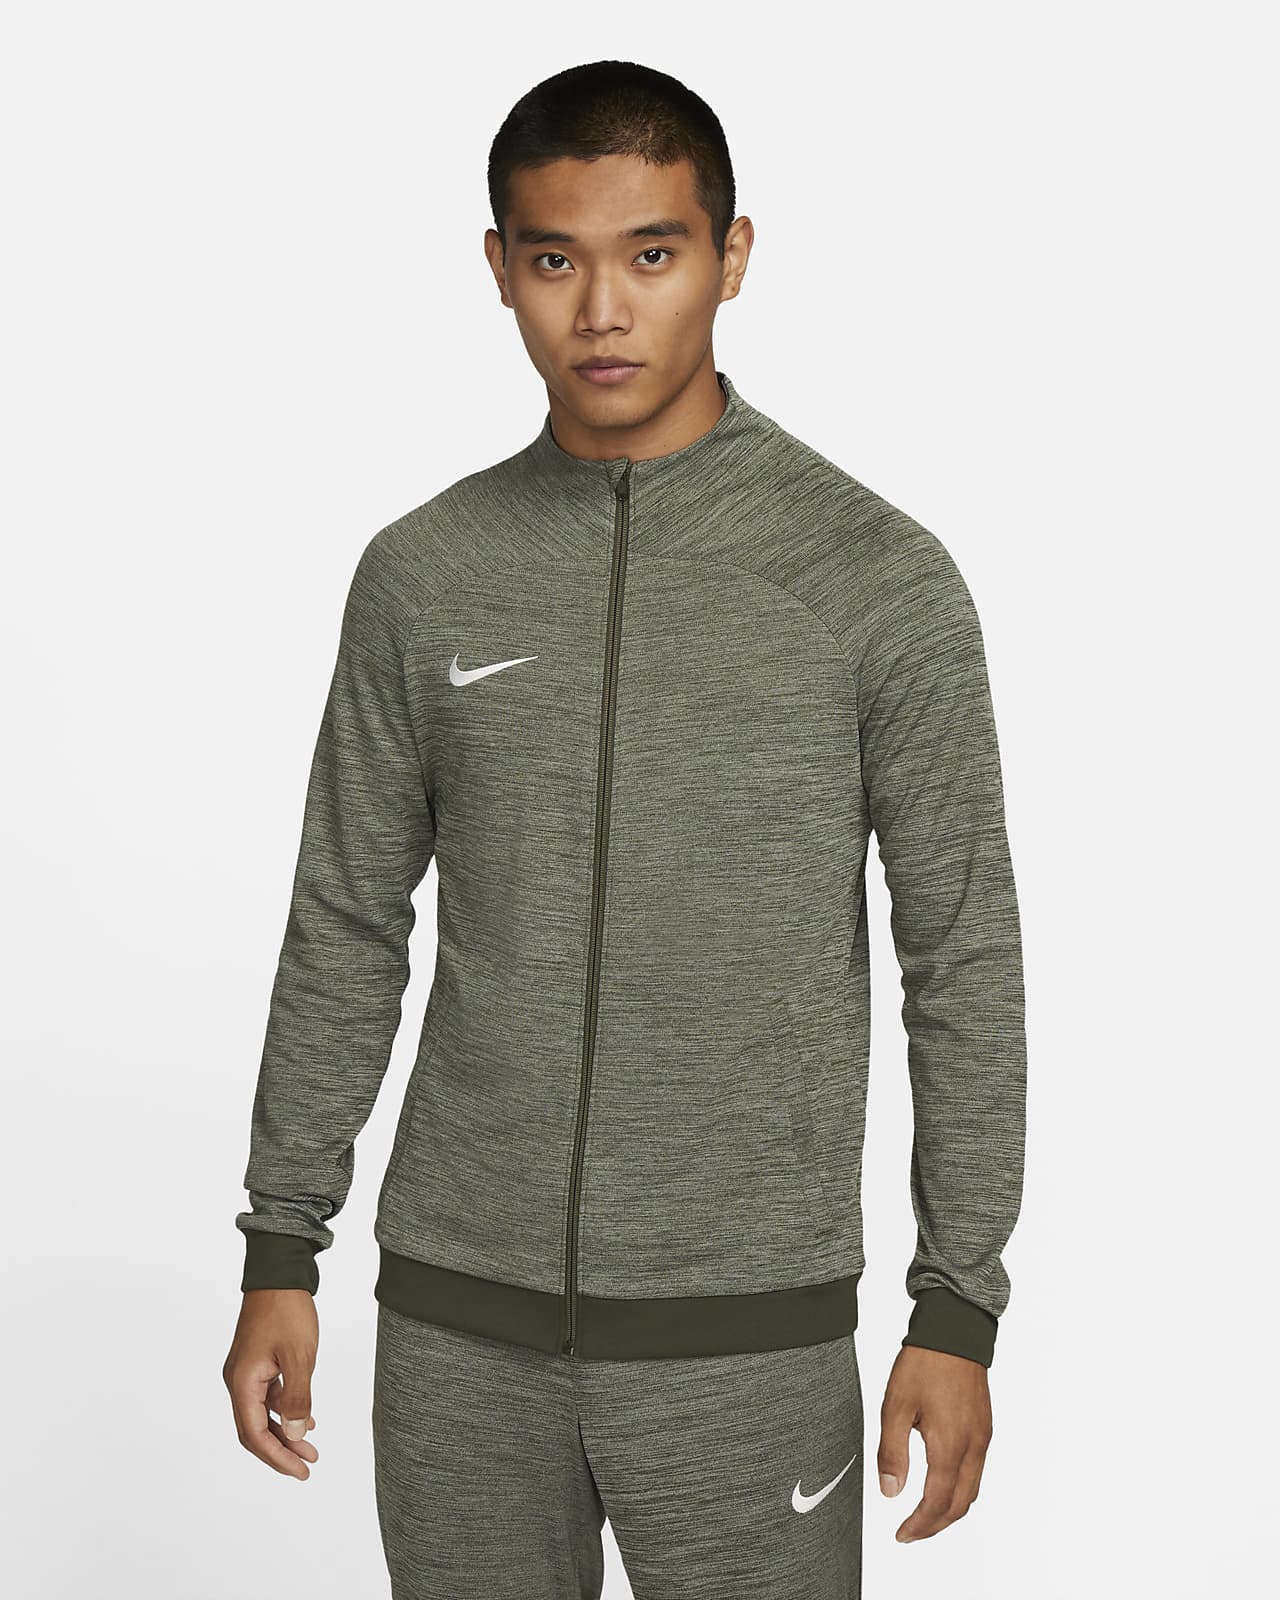 Nike Men's Football Track Jacket. Nike SA